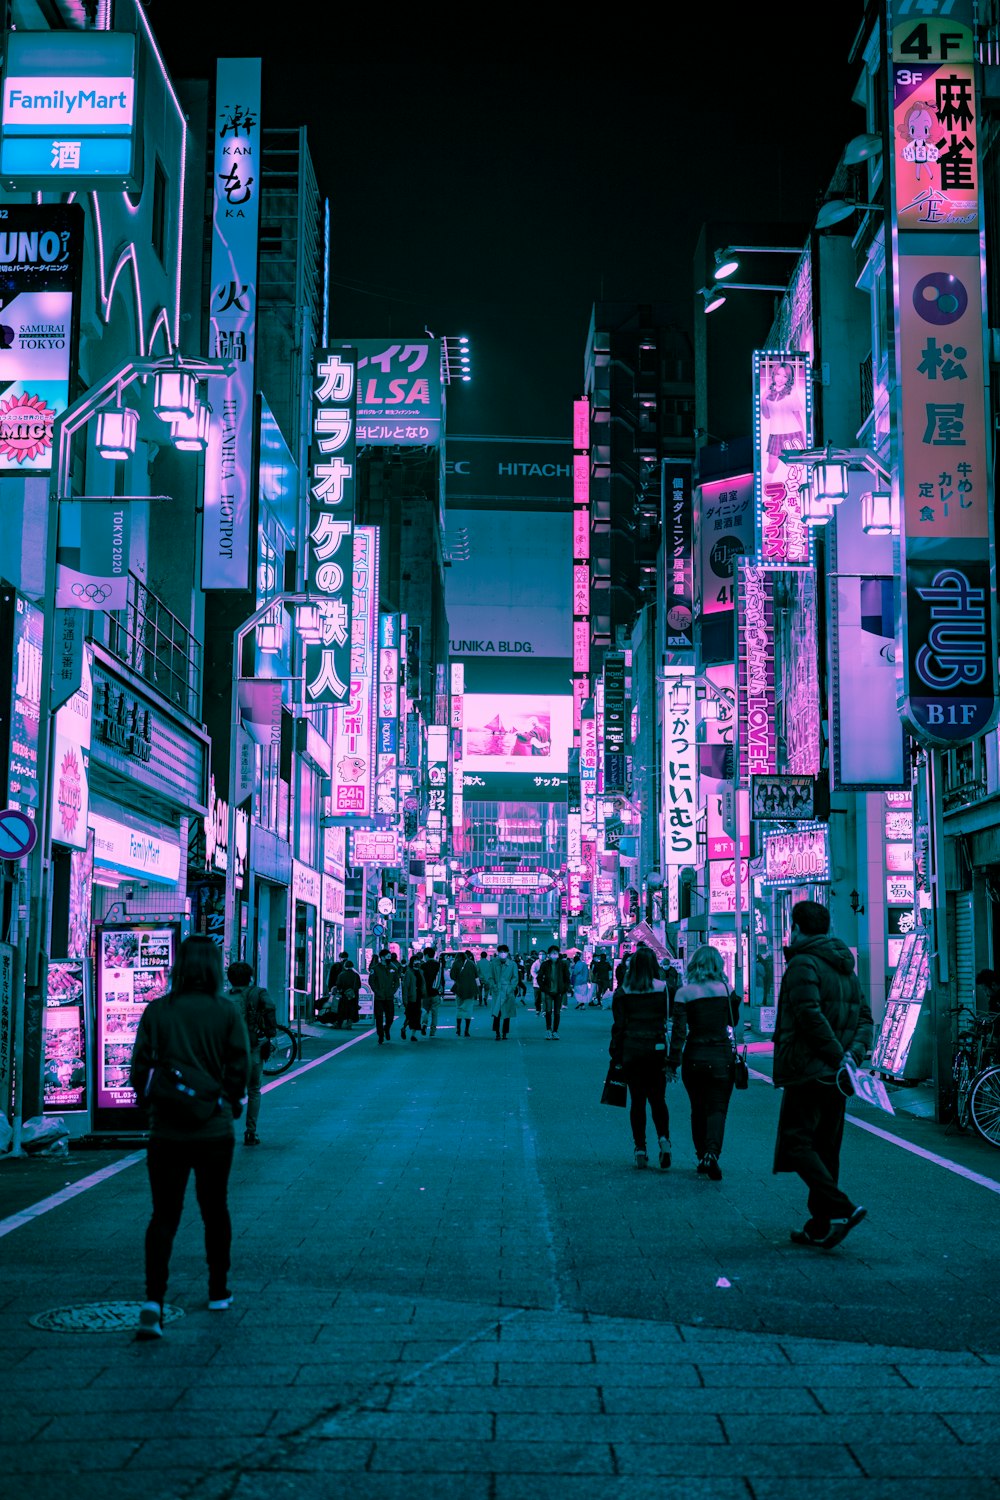 people walking on street during night time photo – Free 东京都日本 Image on ...